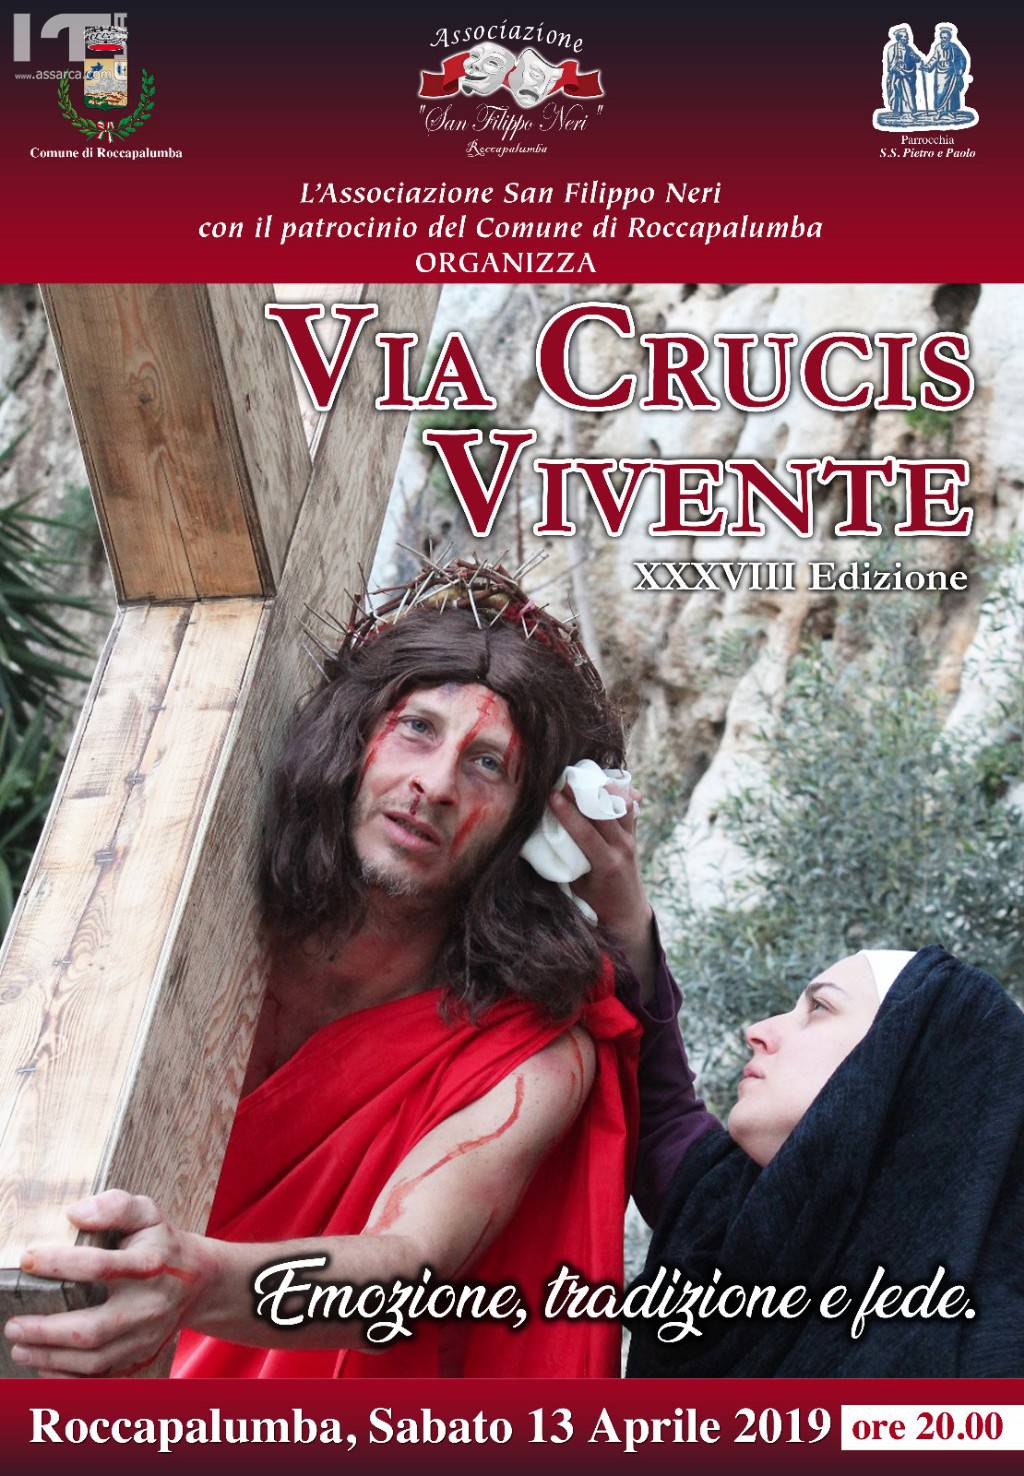 XXXVIII  Edizione della Via Crucis Vivente.